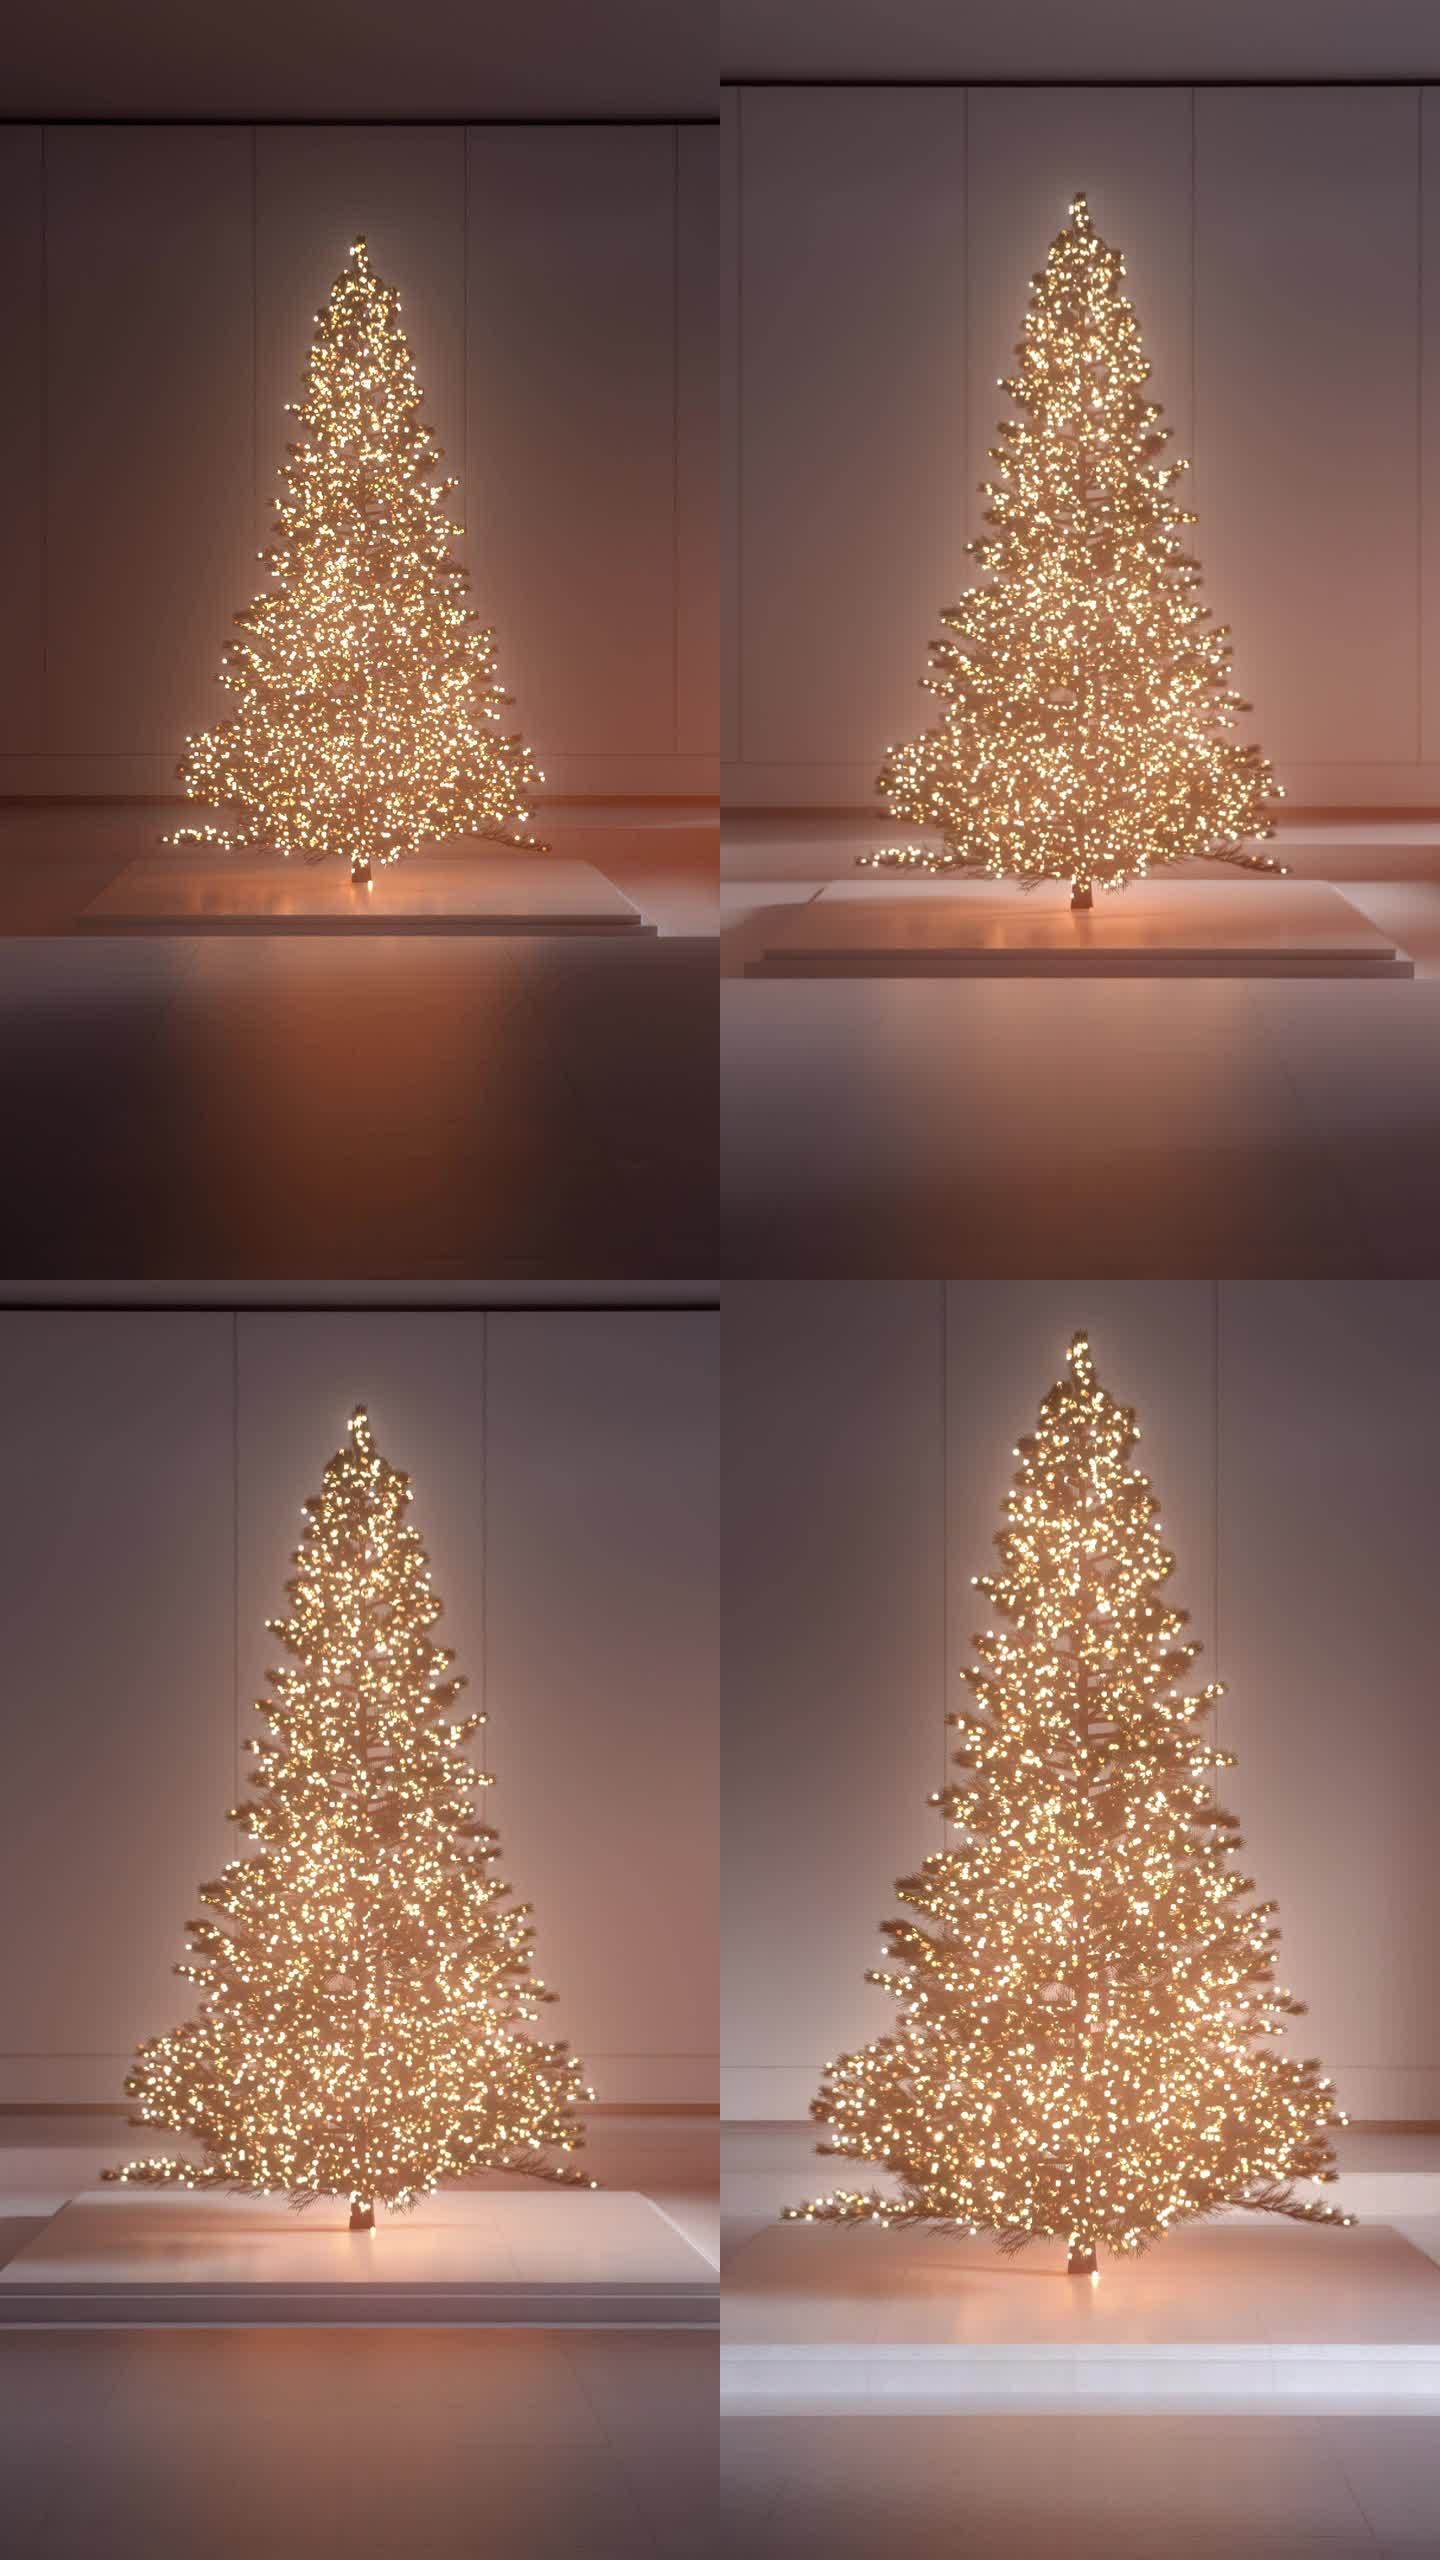 在一个结合了现代风格和传统魅力的空间里庆祝圣诞节，就像在这个发光的树展示中看到的那样。